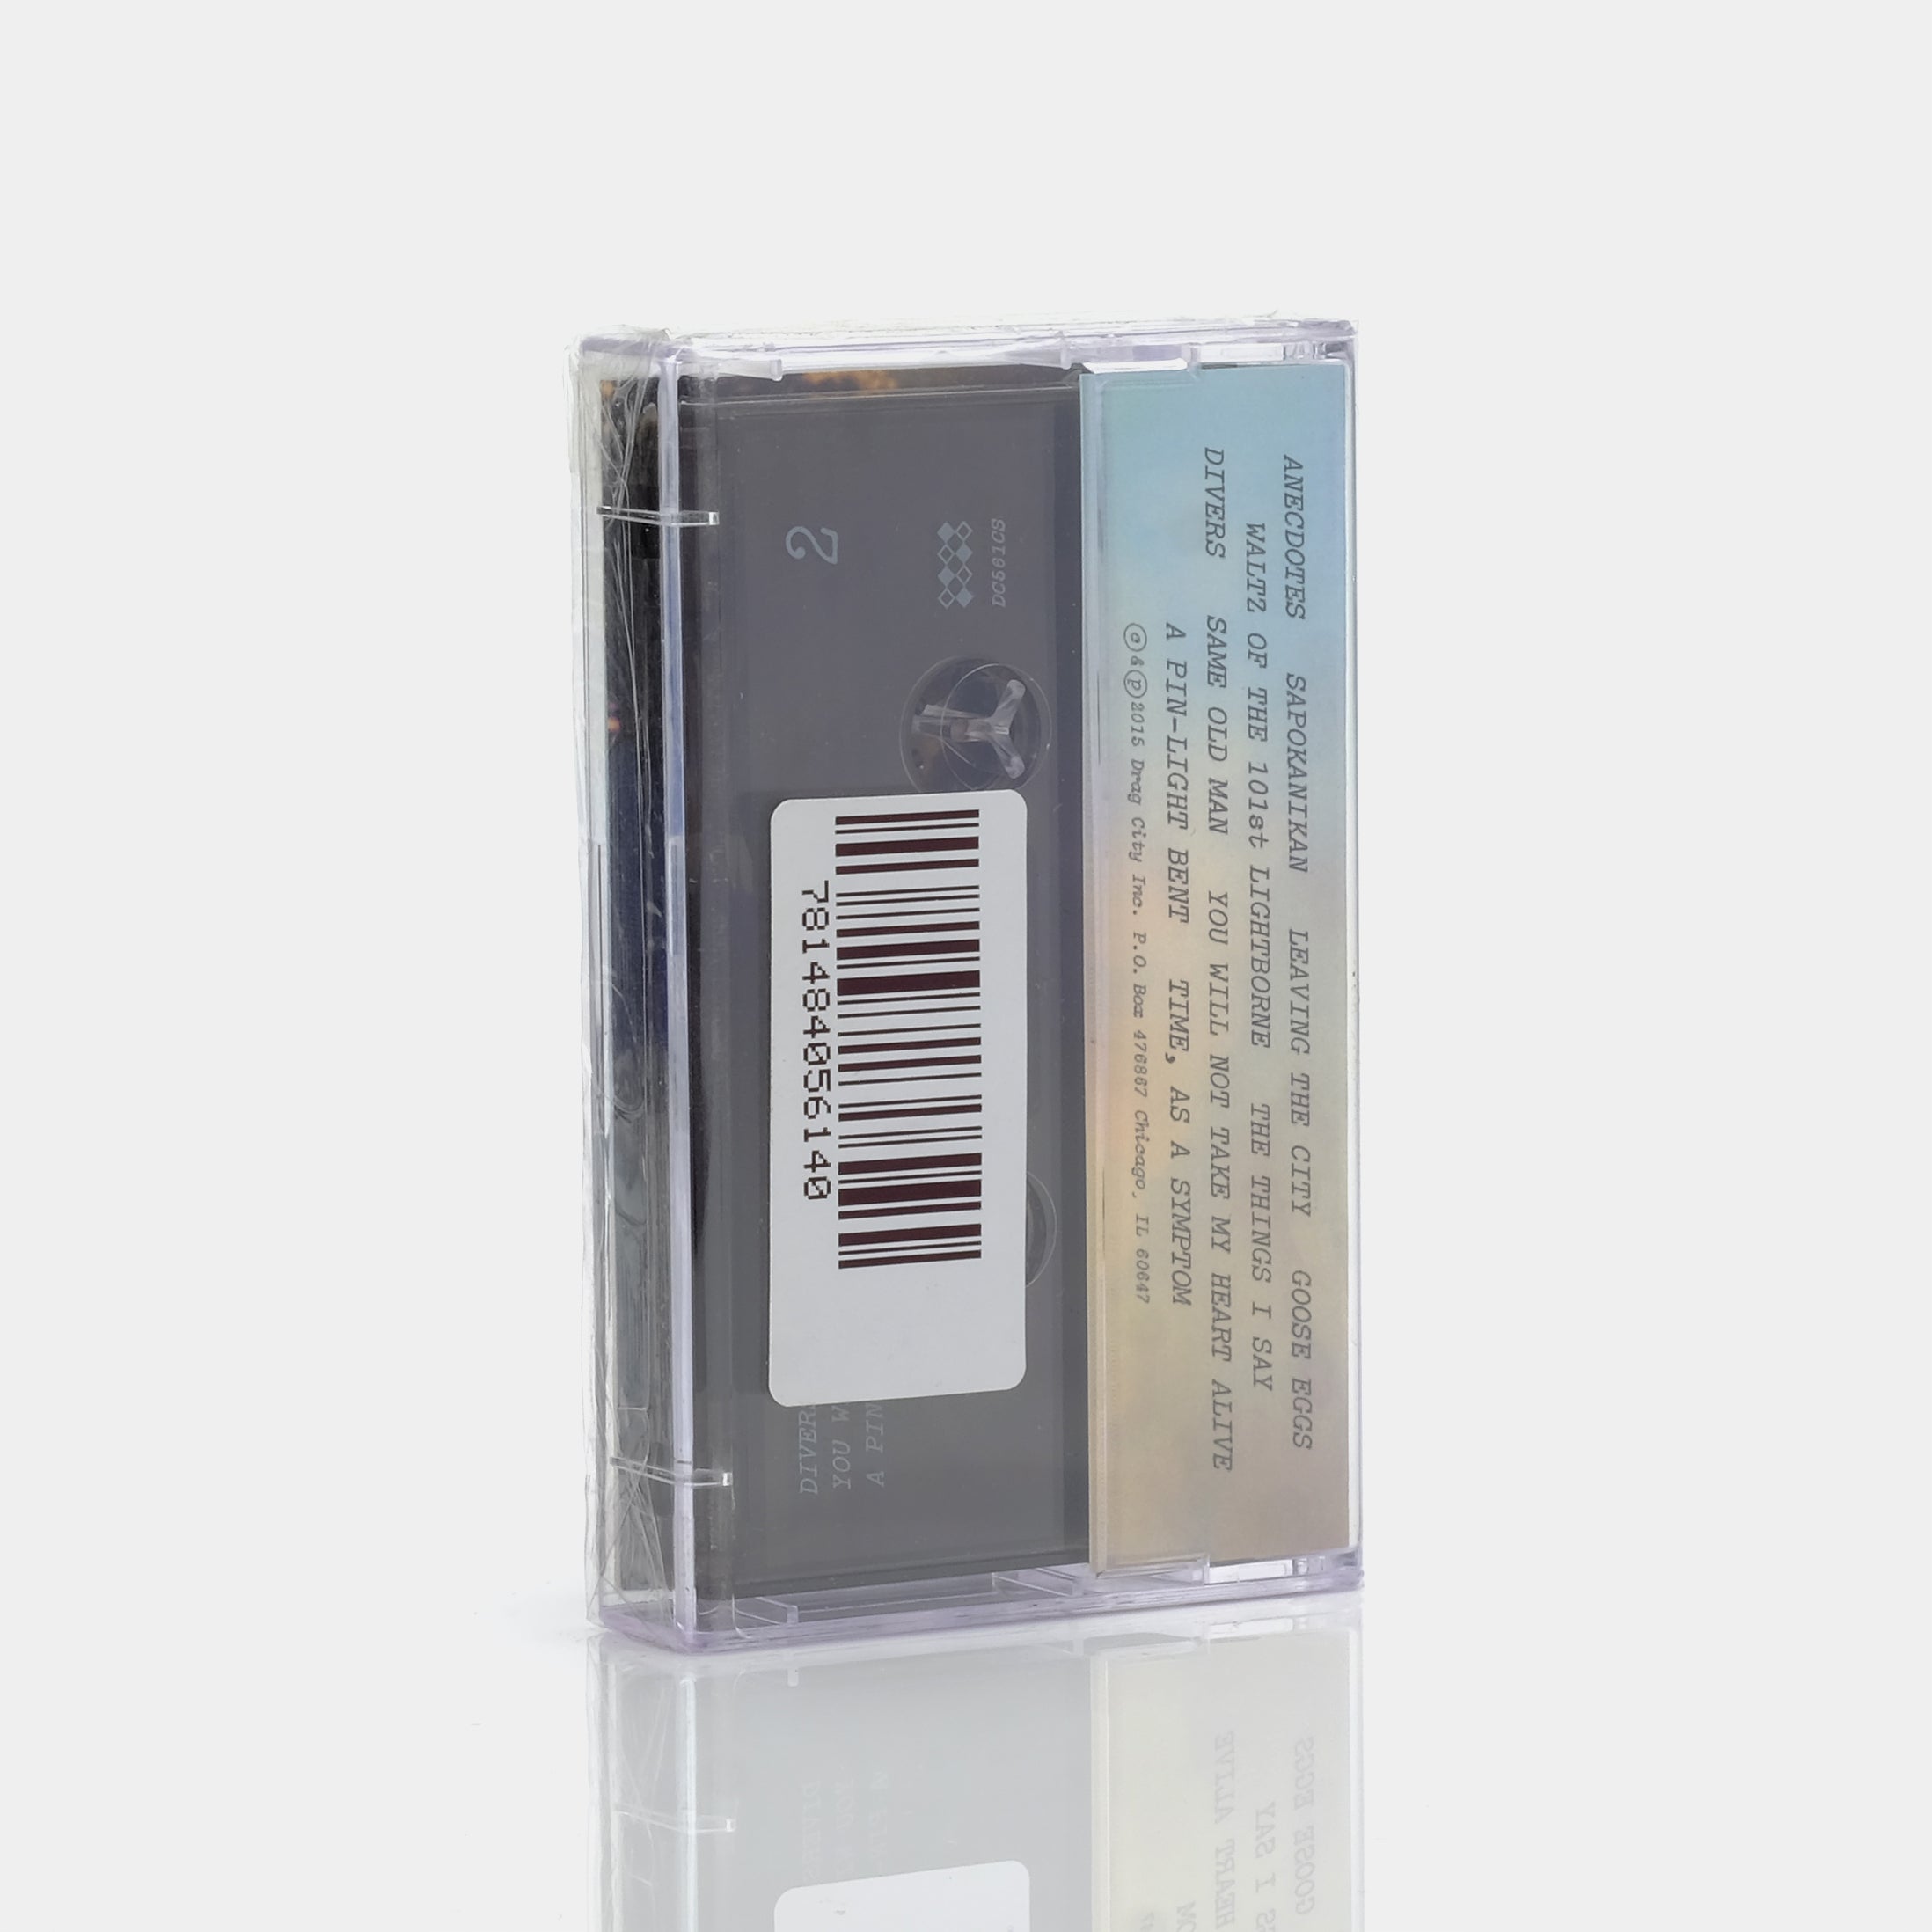 Joanna Newsom - Divers Cassette Tape